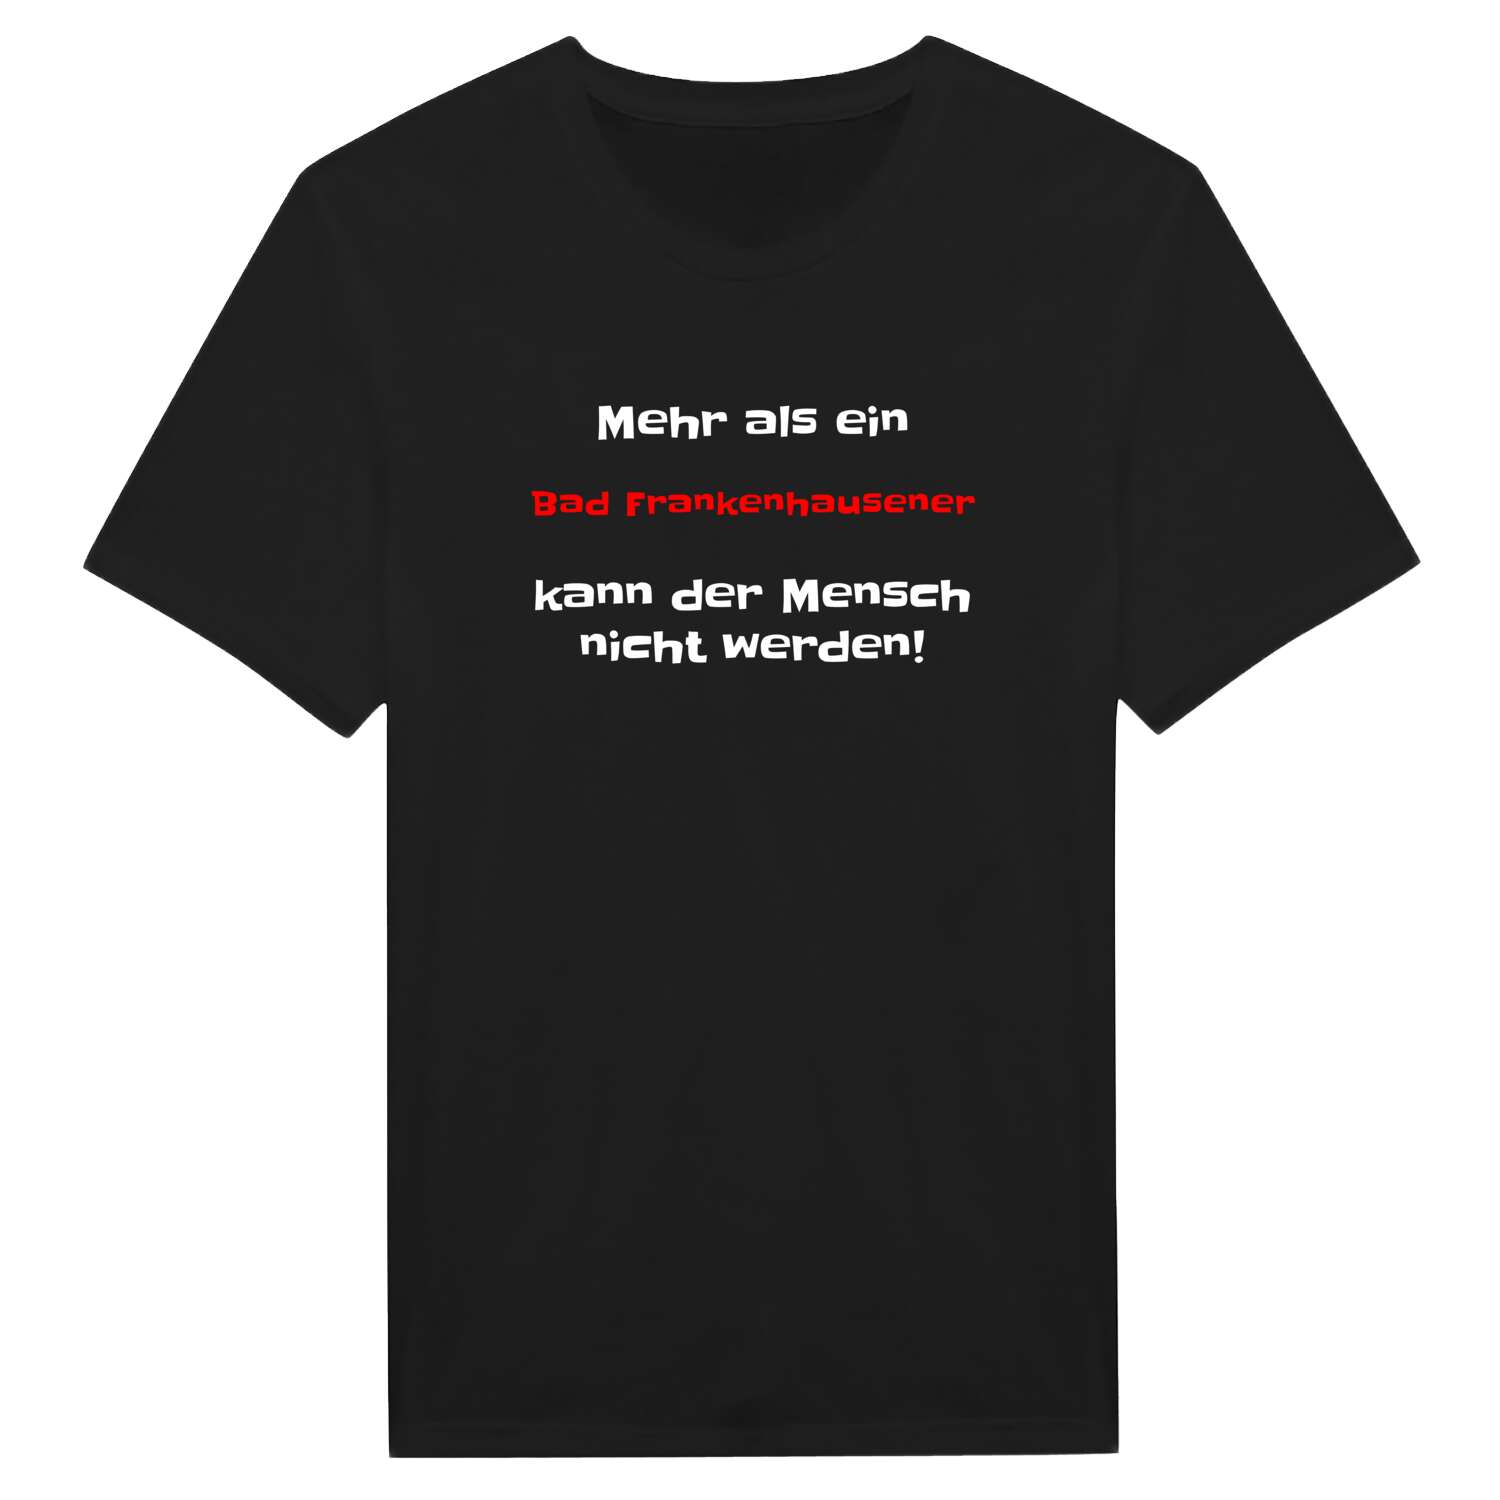 Bad Frankenhausen T-Shirt »Mehr als ein«